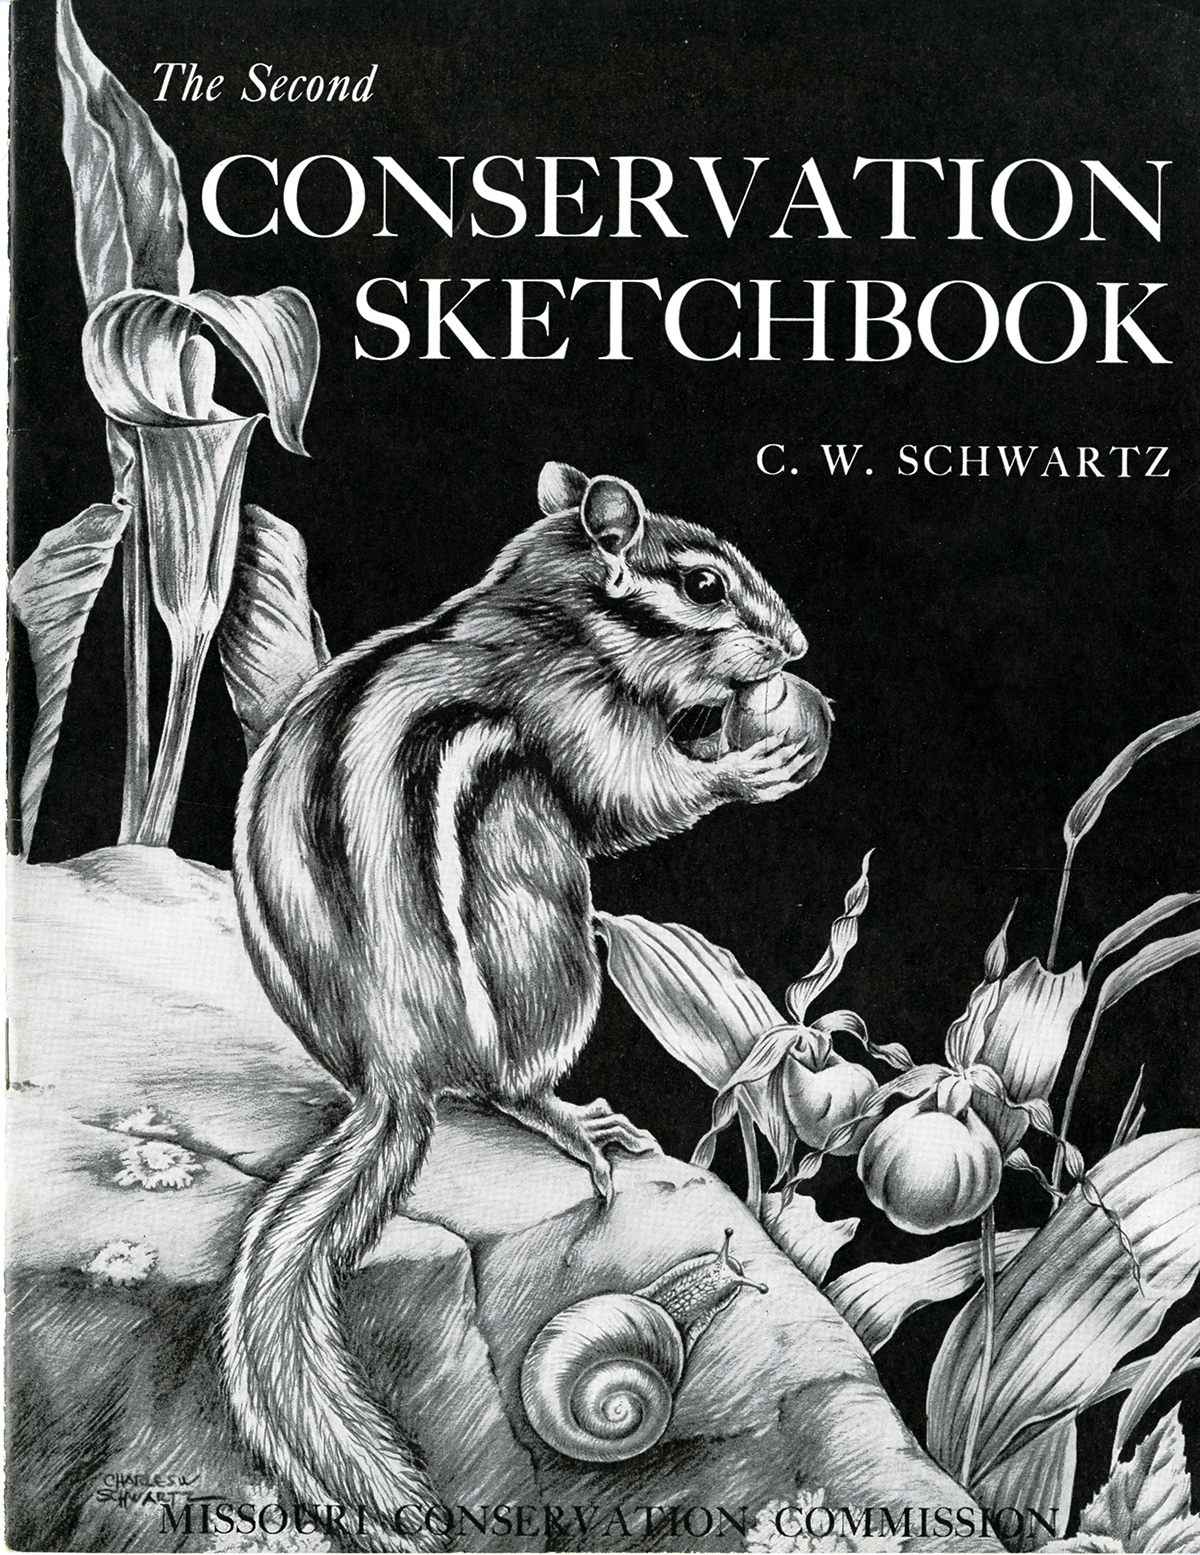 The Second Conservation Sketchbook, 1953